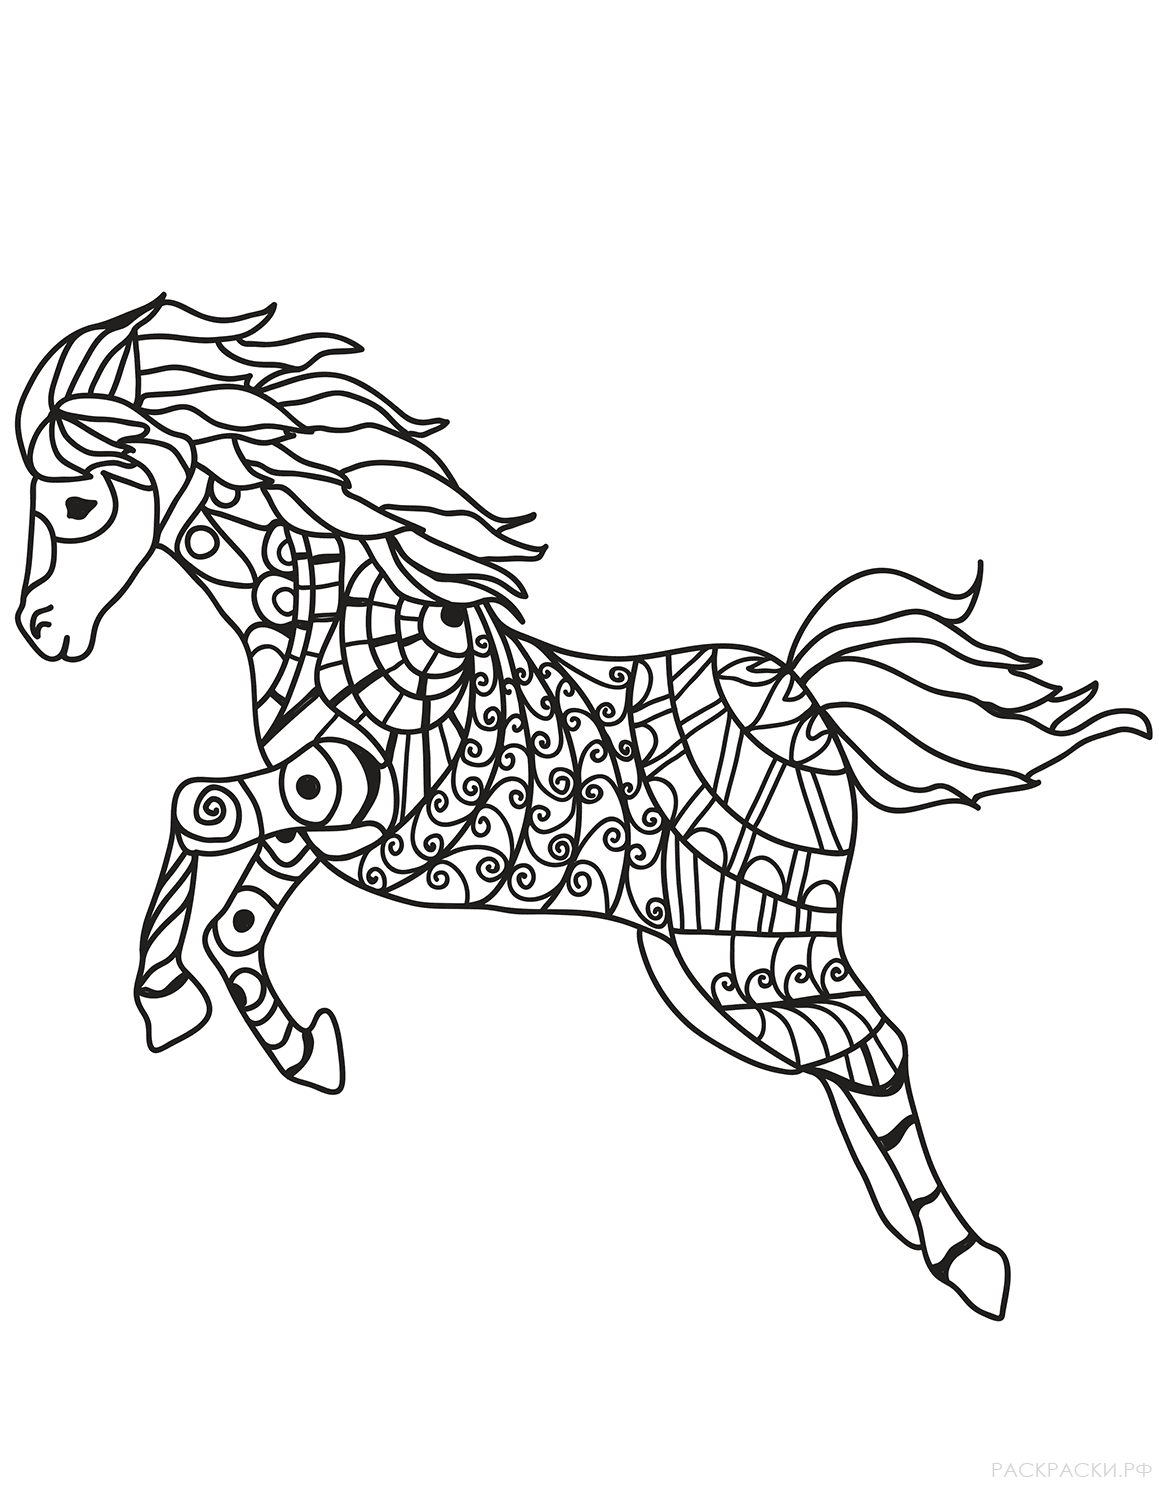 Раскраска Бегущая лошадь в технике дзентангл